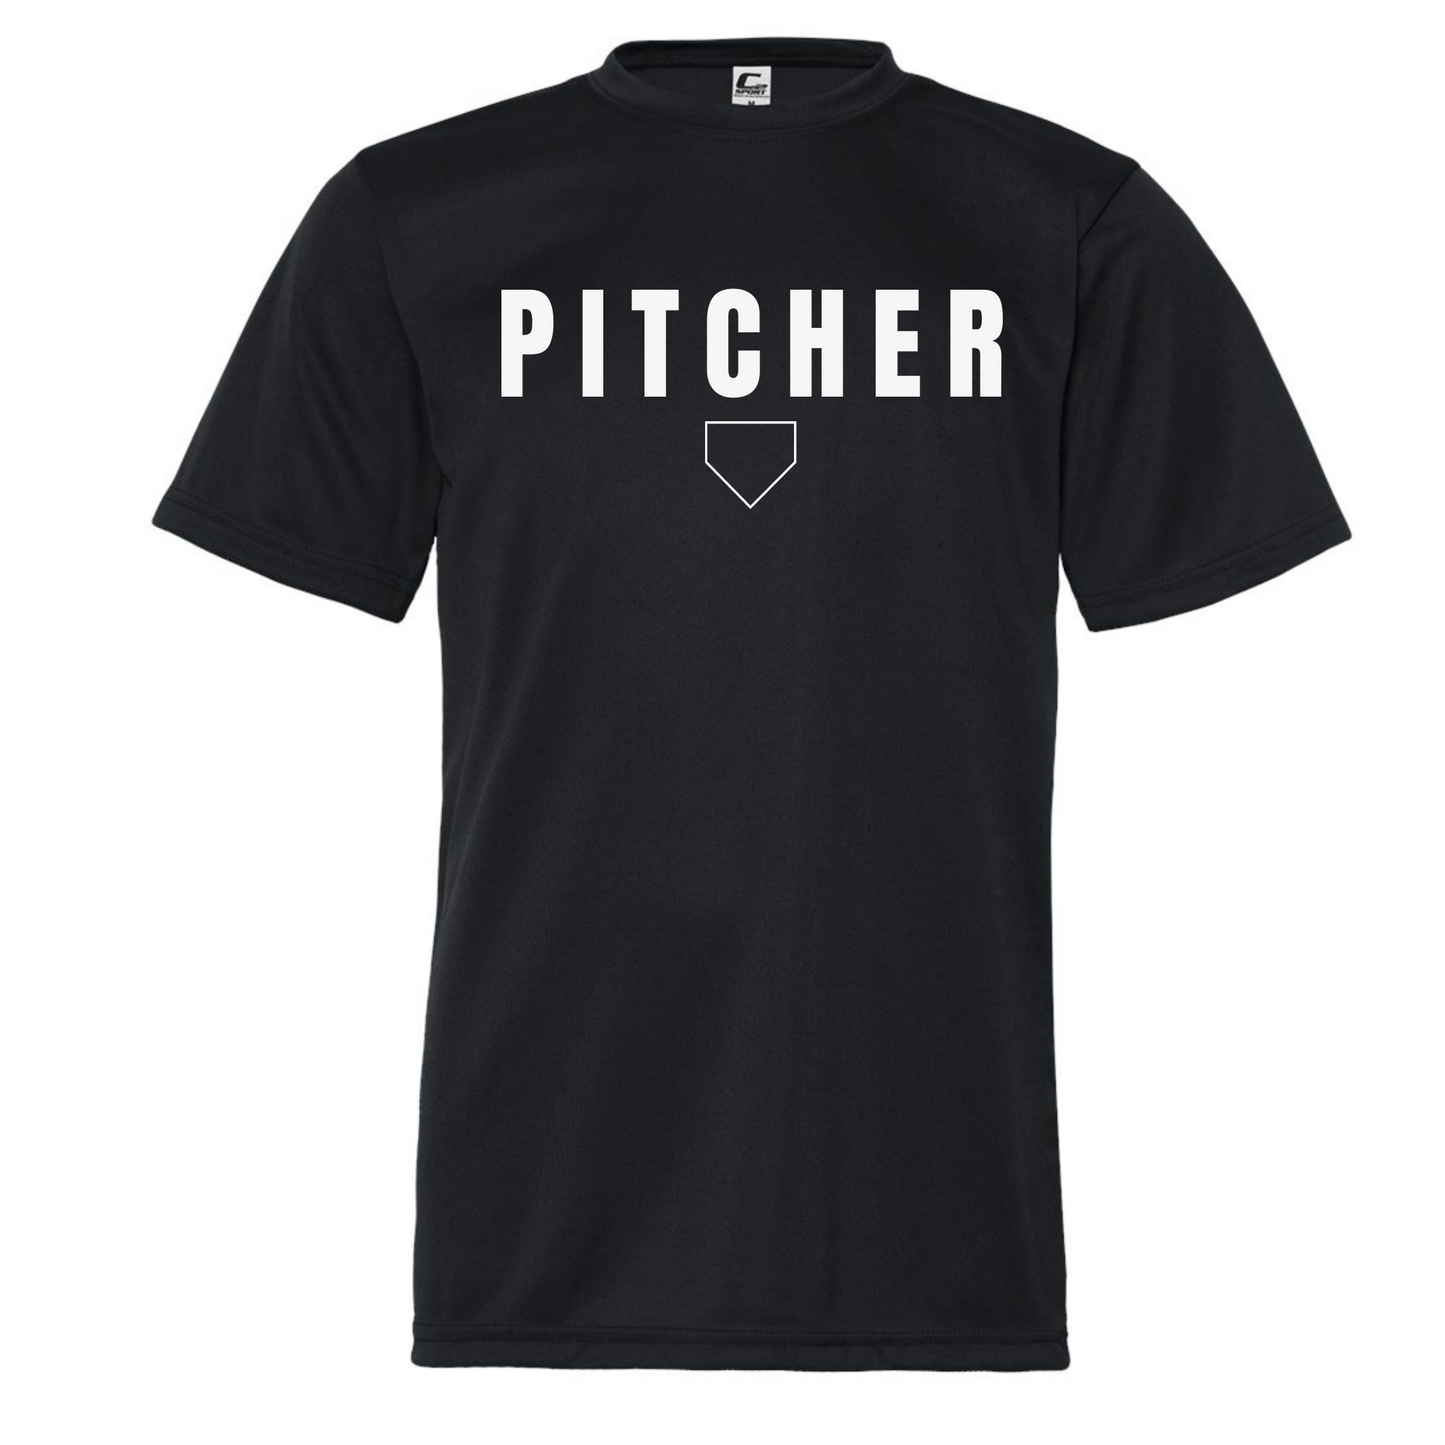 "Pitcher" T-Shirt